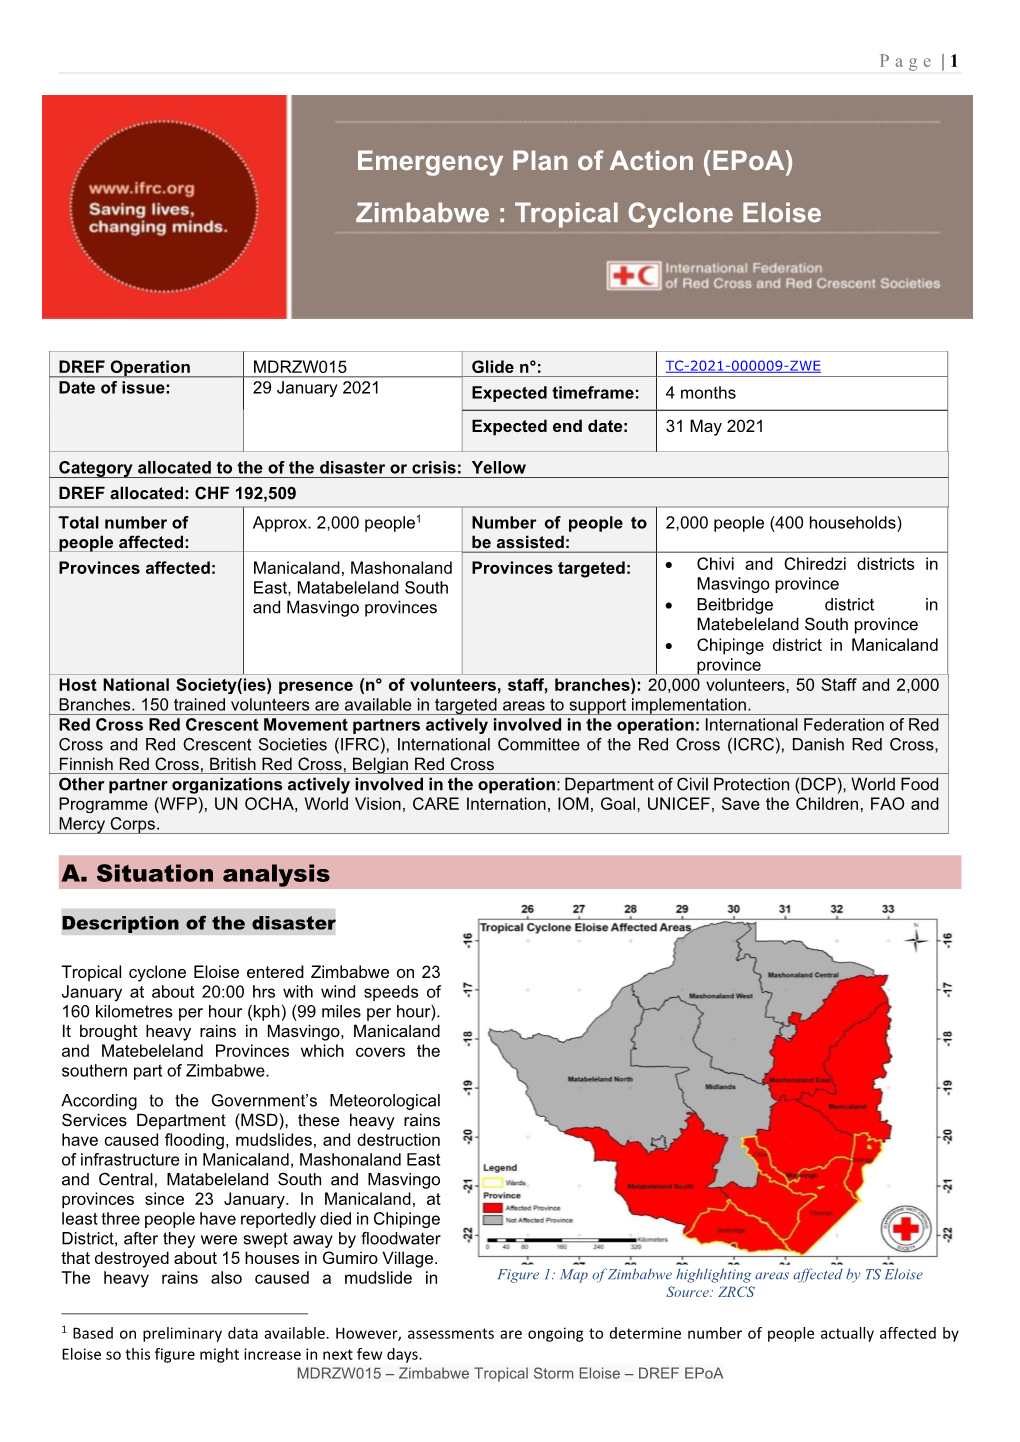 Emergency Plan of Action (Epoa) Zimbabwe : Tropical Cyclone Eloise